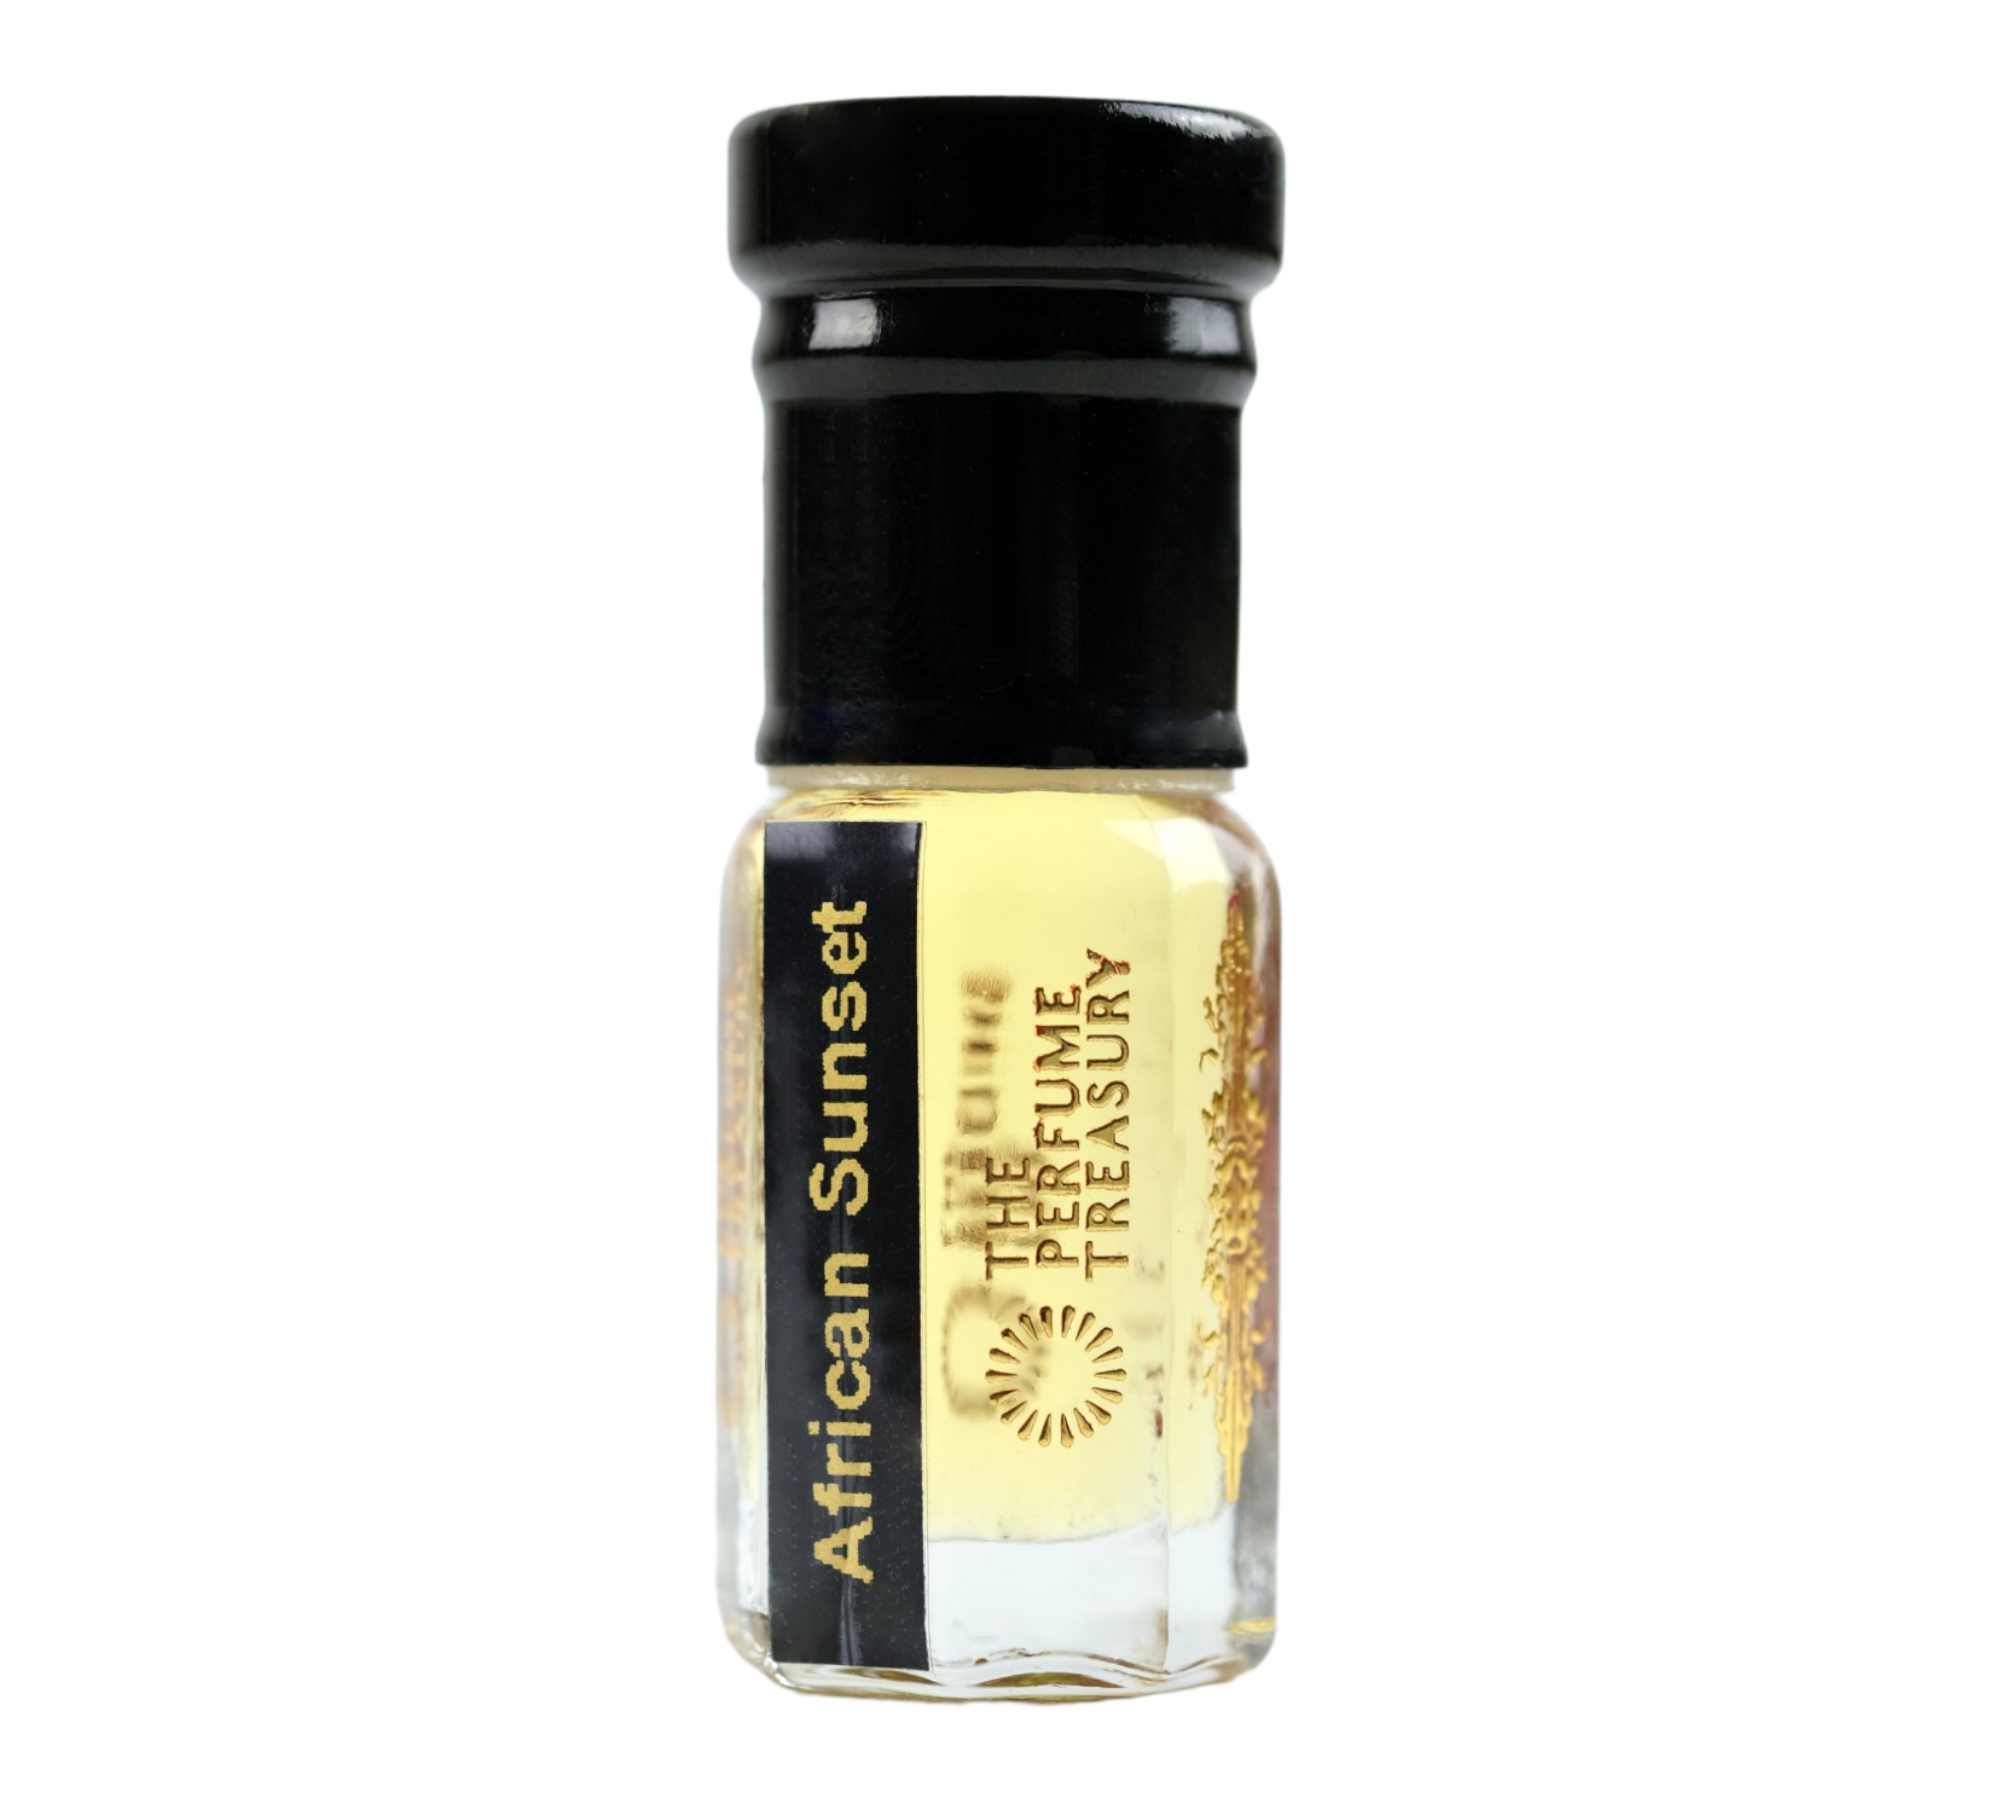 Sunset White Amber Fragrance Oil